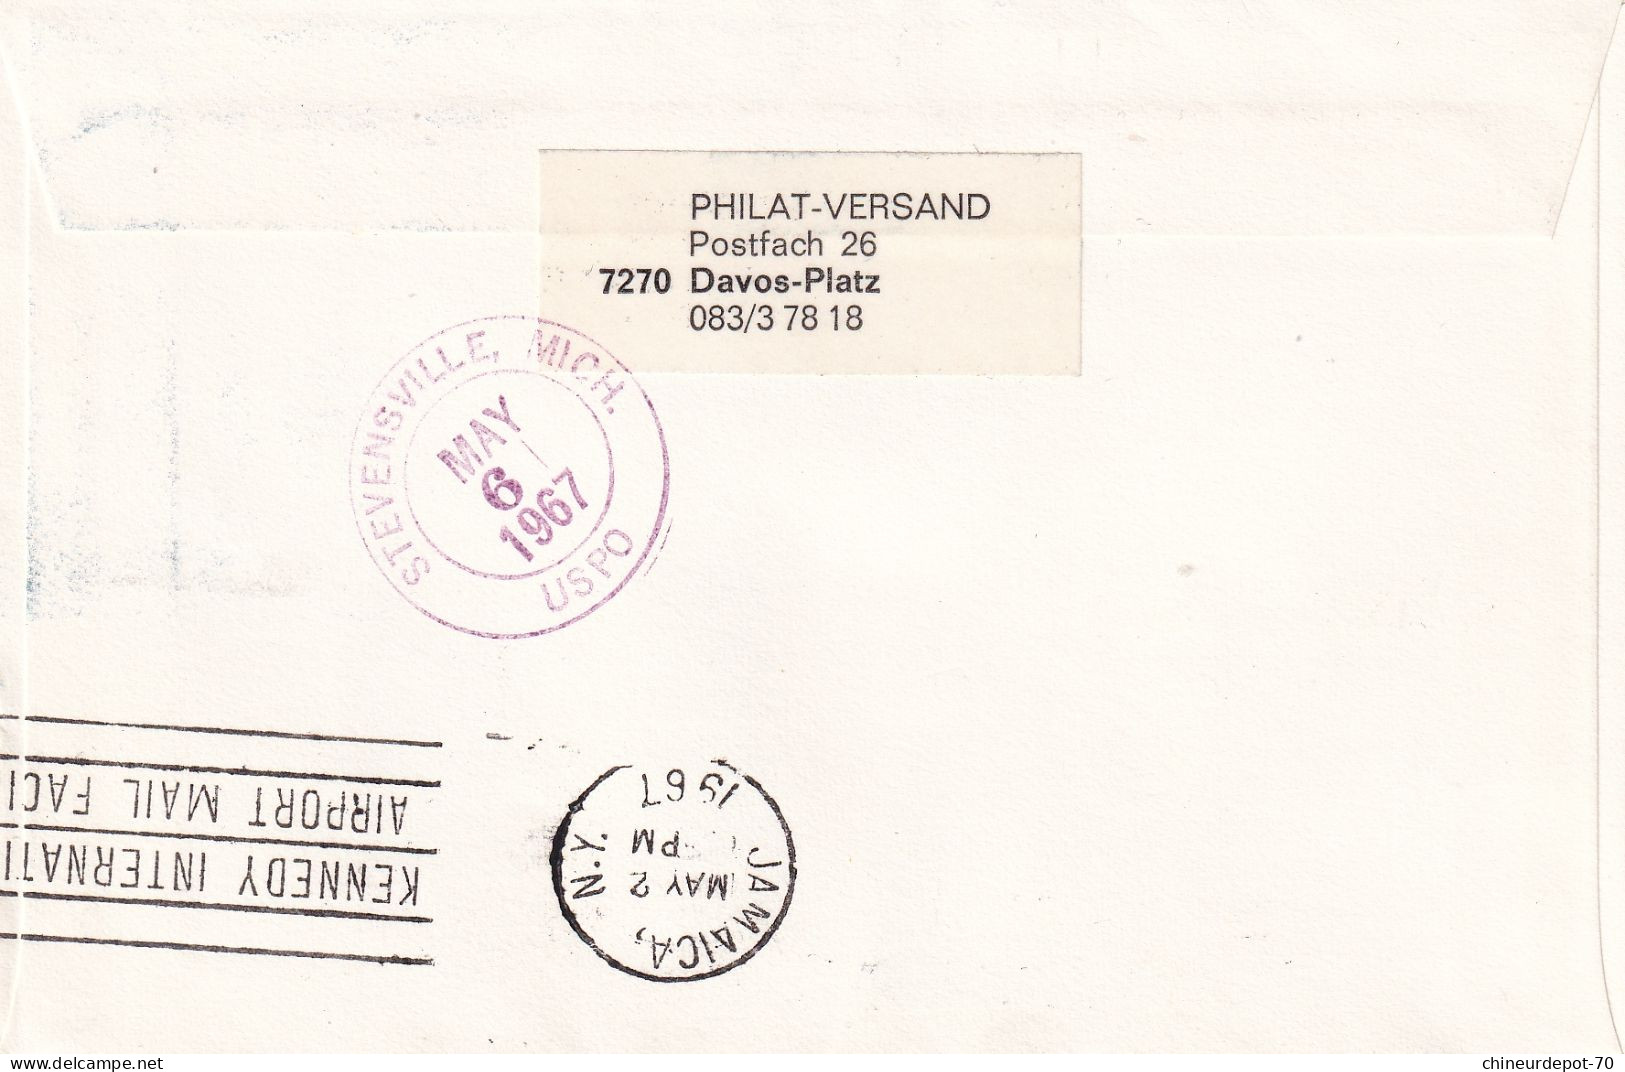 Recommandé Zurich Flughaten Einschreiben Swissair Mai 21 1967 Europa Stevenssville Mich Uspo Jamaica - Lettres & Documents